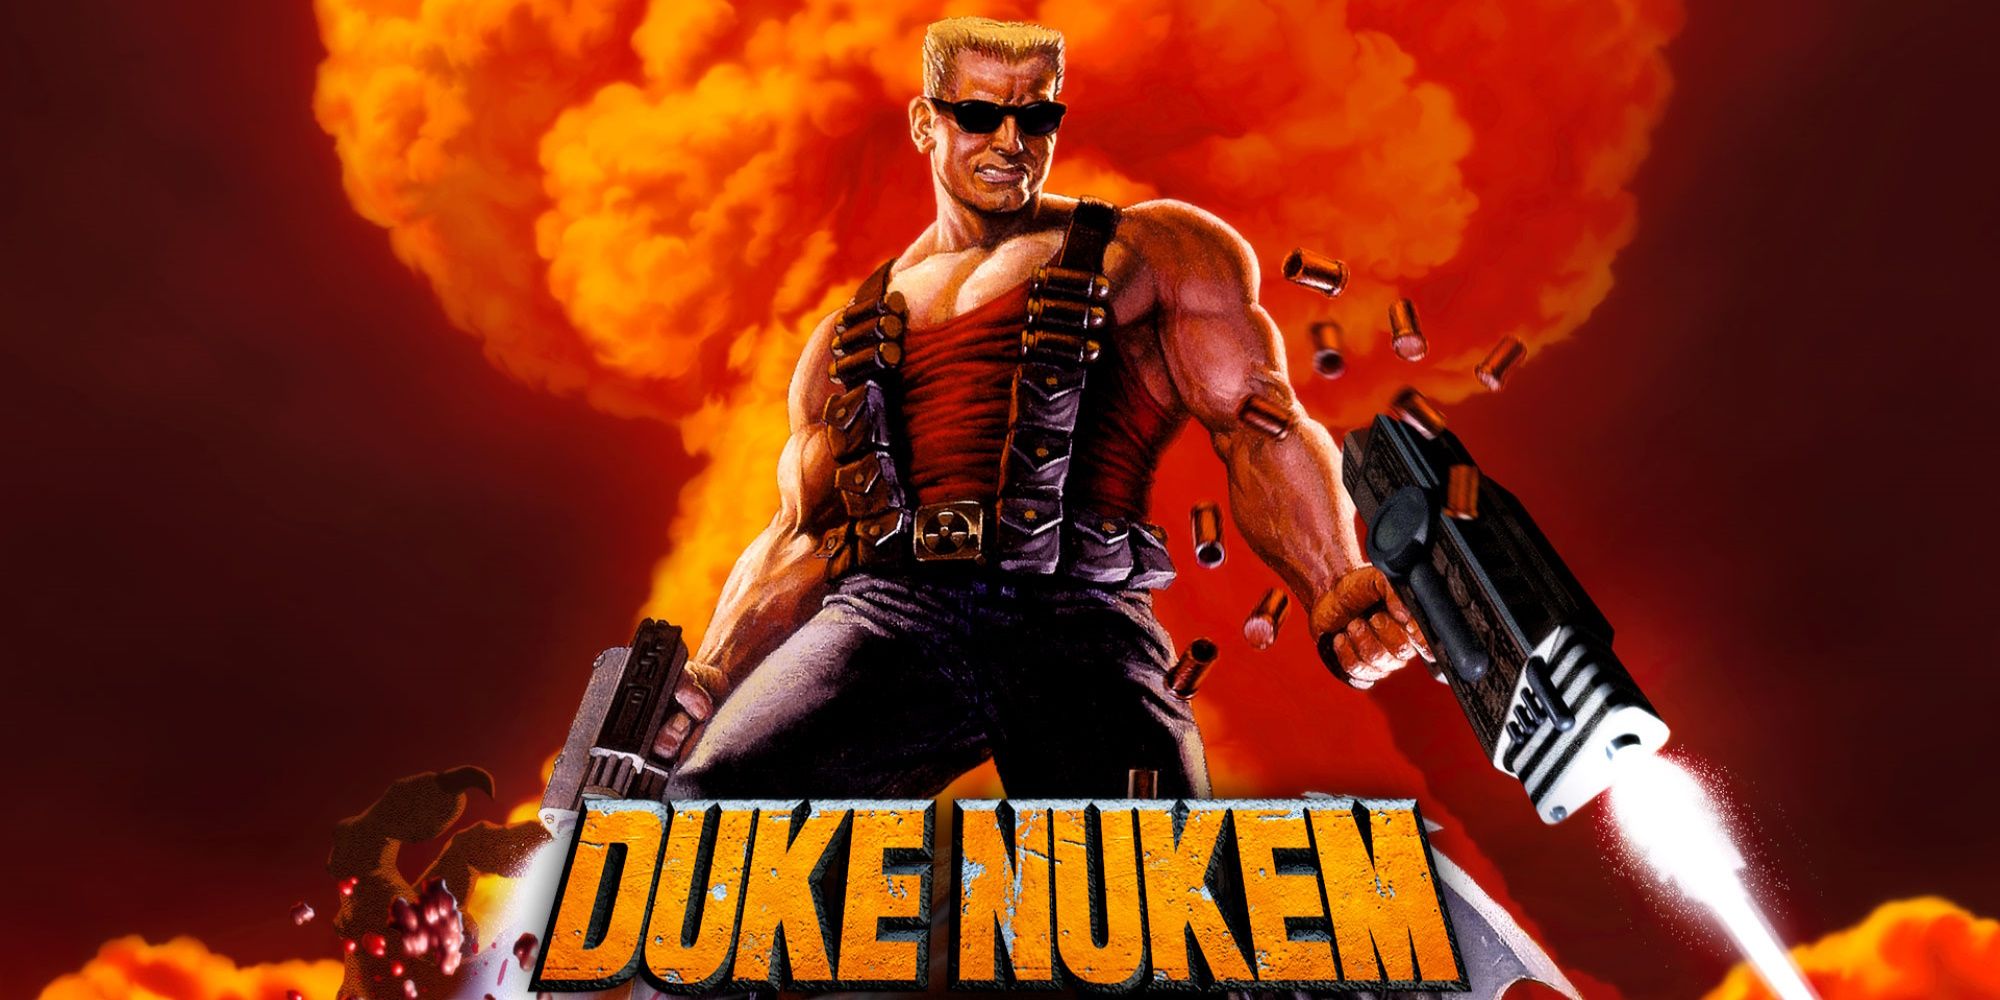 the cover art for Duke Nukem 3D